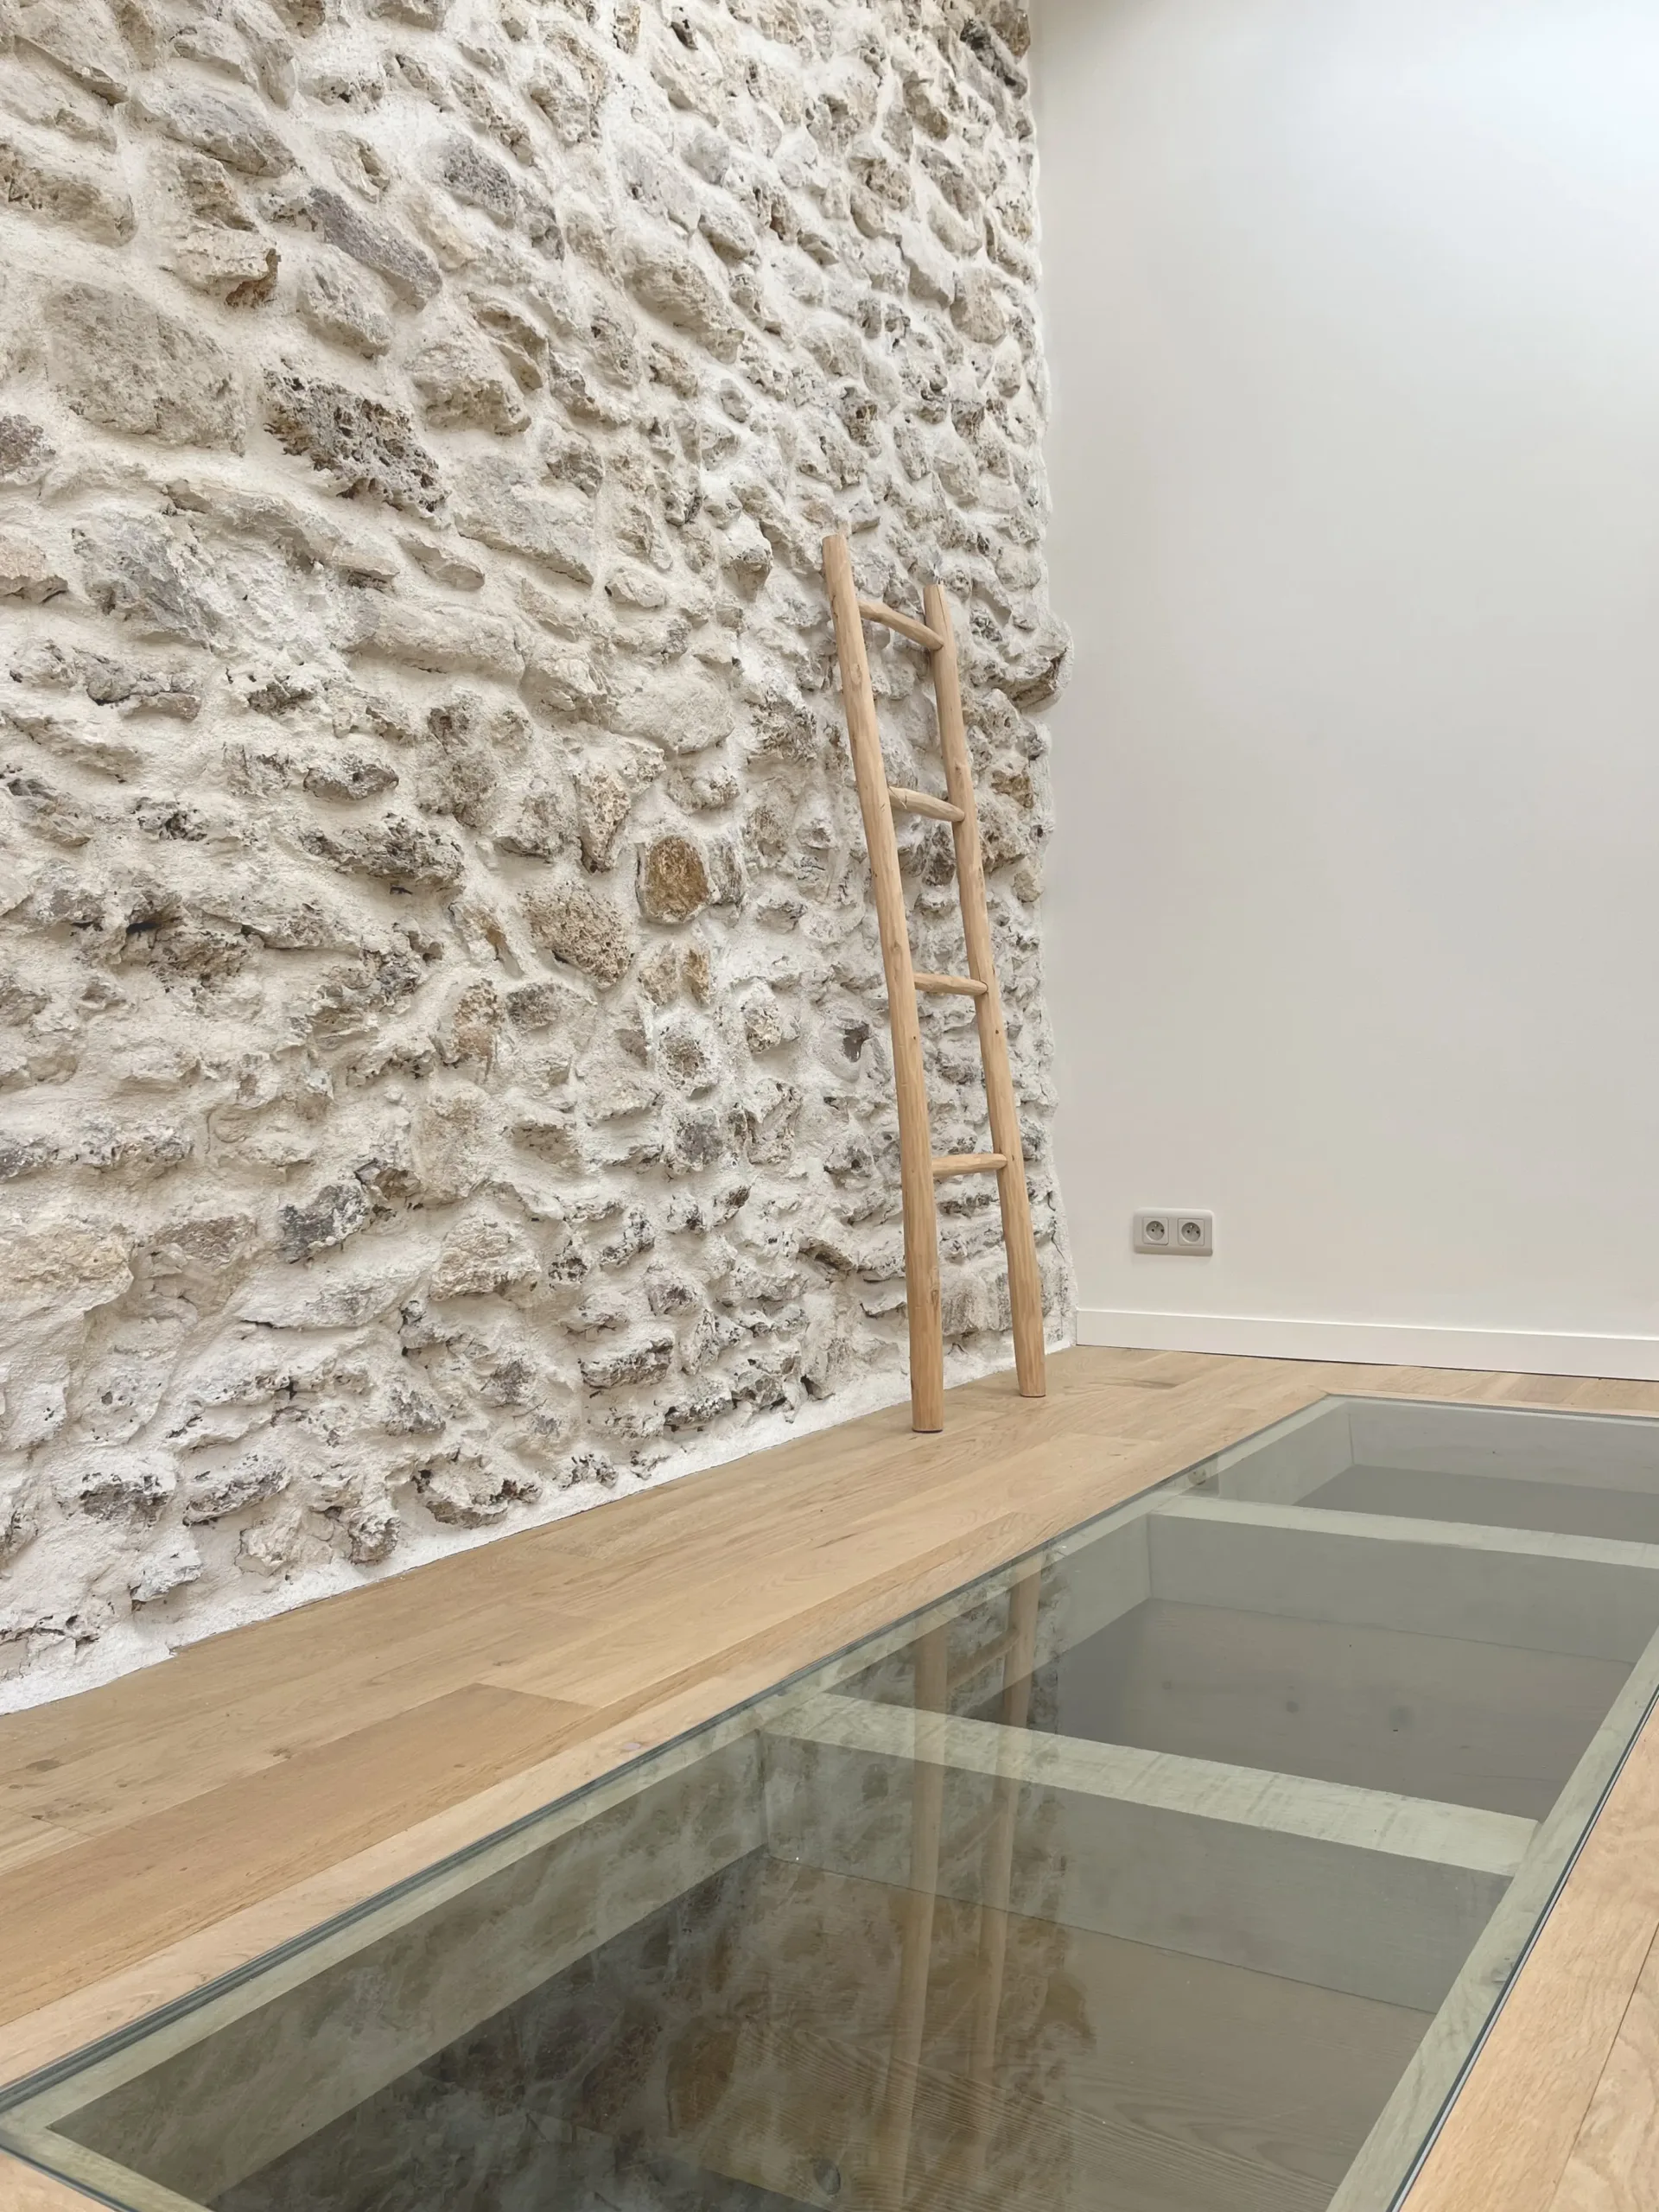 plancher verre - plancher vitré - pierre et verre - mur intérieur en pierre